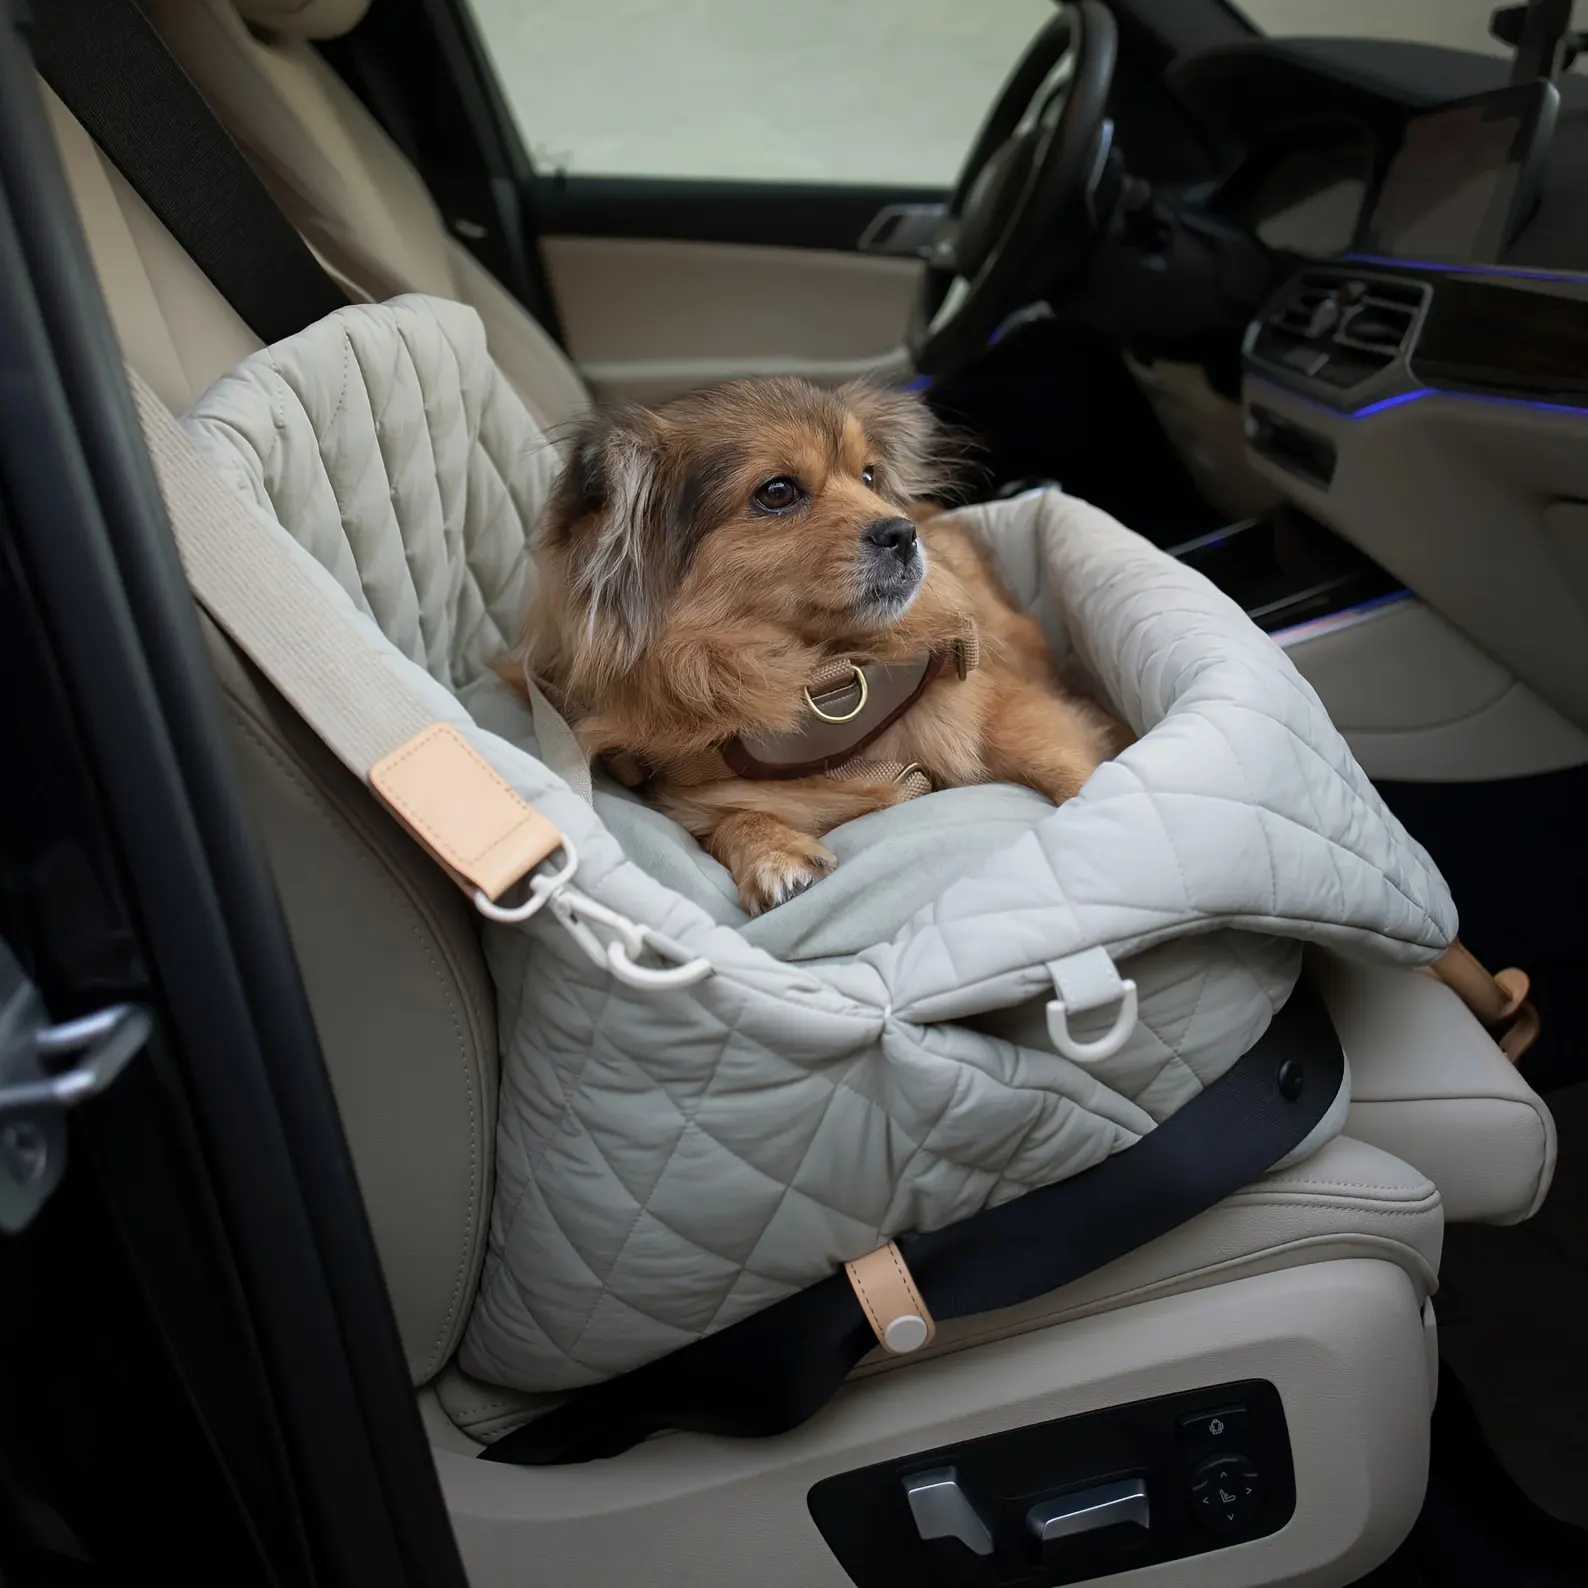 Safety Car Seat Cover Travel Dog Bed Pet Carrier Bag Foldable Dog Car Seat Bag Basket